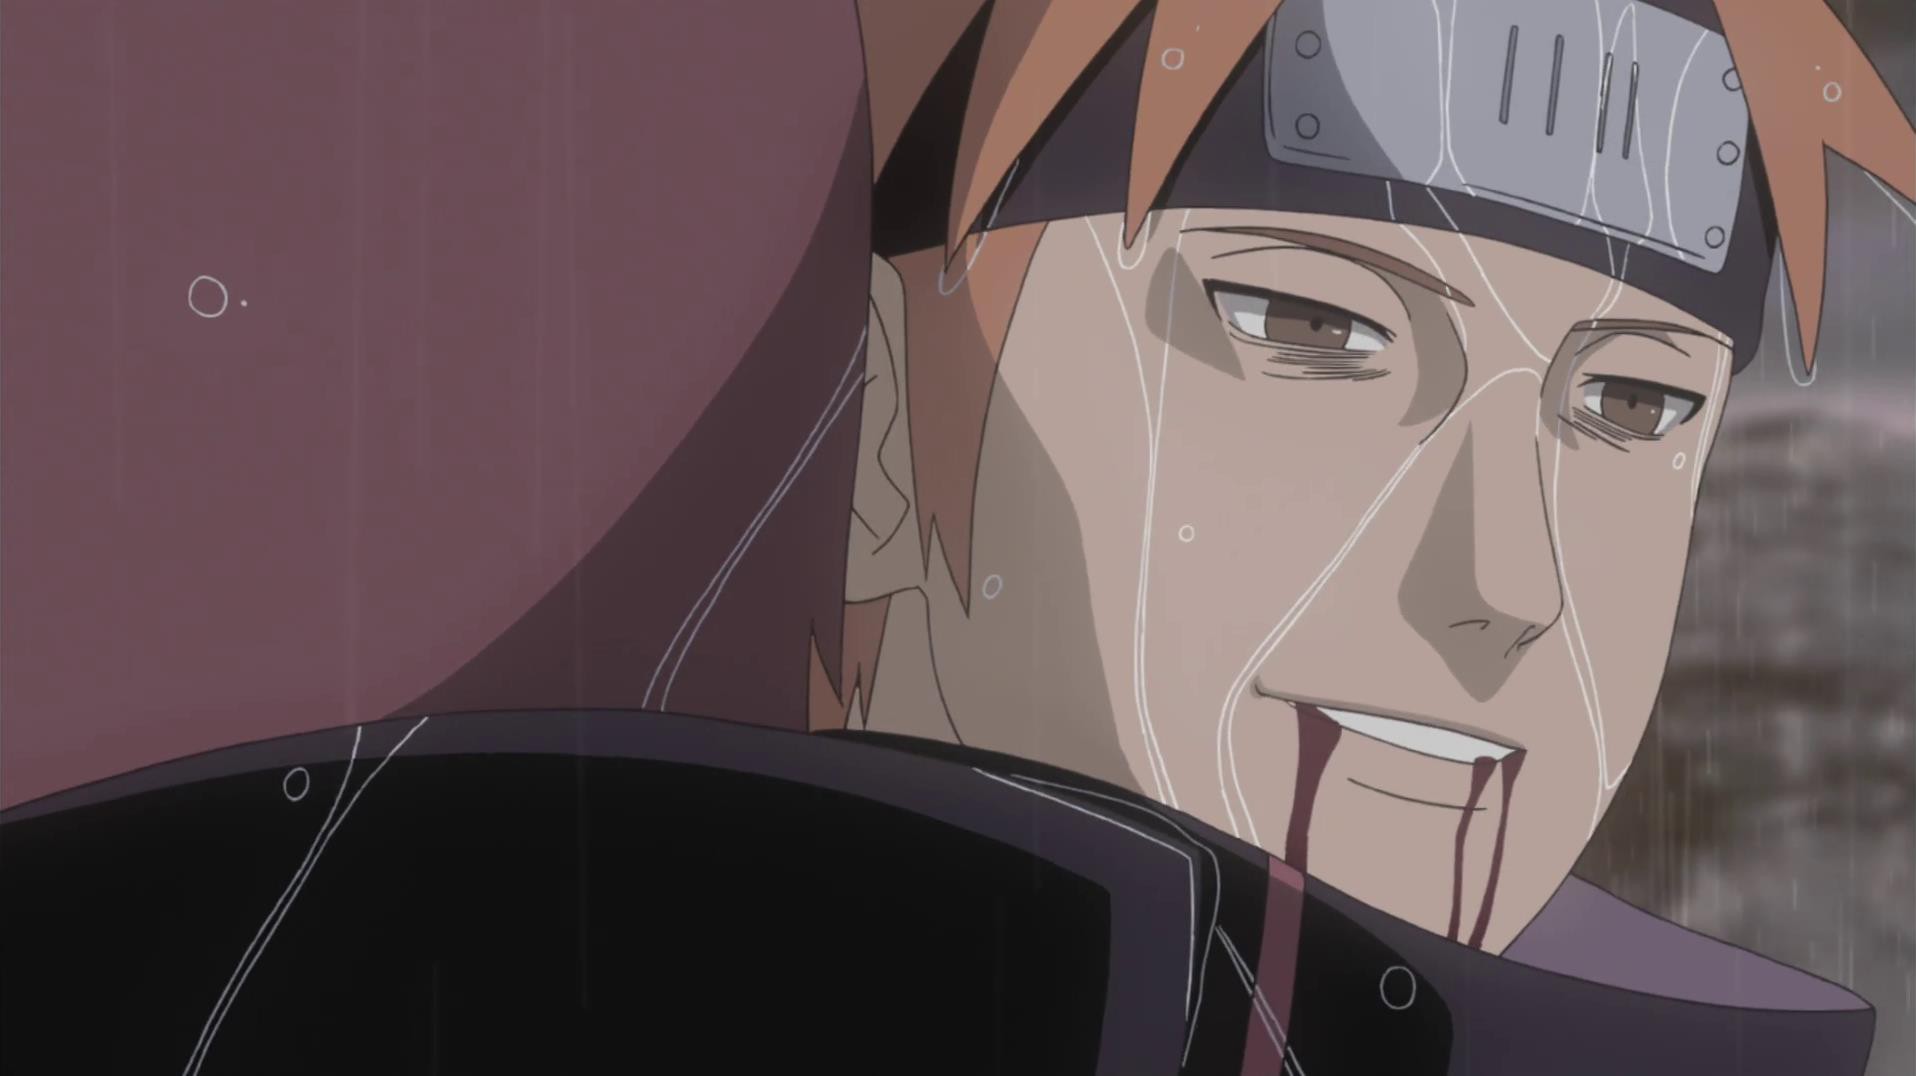 Xem 12 cái chết ảnh hưởng Naruto, bạn sẽ hiểu rõ hơn về những biến cố đầy kịch tính và đau lòng trong series này. Những tập phim đầy xúc động và ngập tràn tình cảm này sẽ khiến bạn khó lòng rời mắt khỏi màn hình.